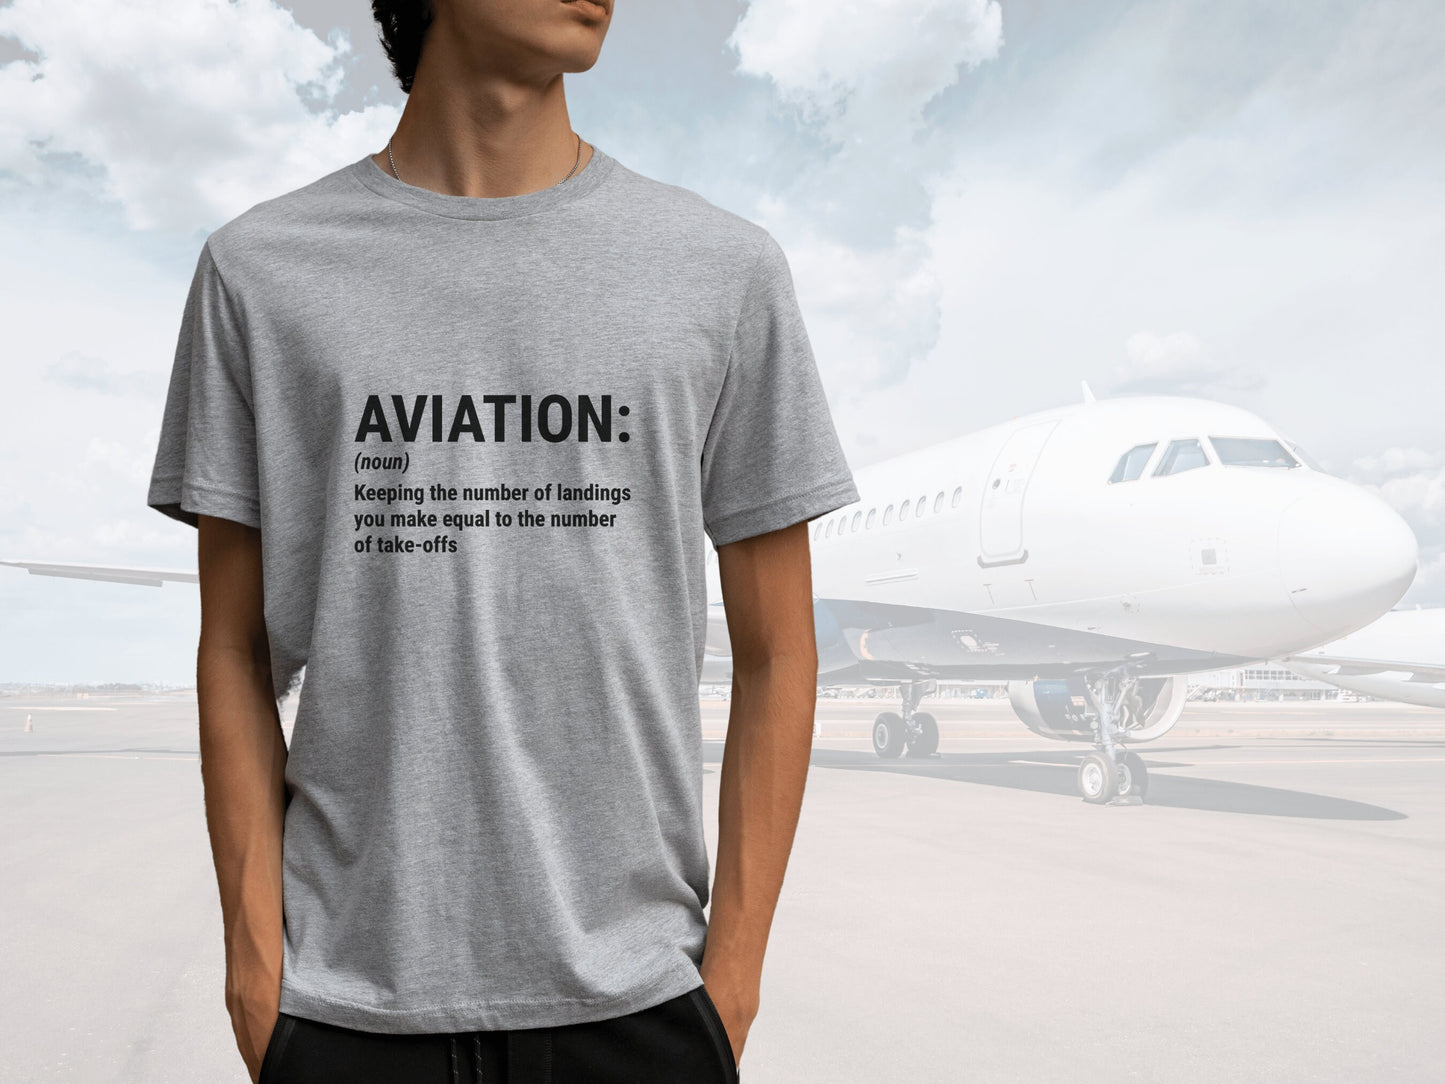 Aviation Pilot Shirt, Aviation Noun Shirt, Alphabet Flying Pilot Gift, Gifts for Pilot Shirt, Airline Pilot Shirt, Aviation Shirt